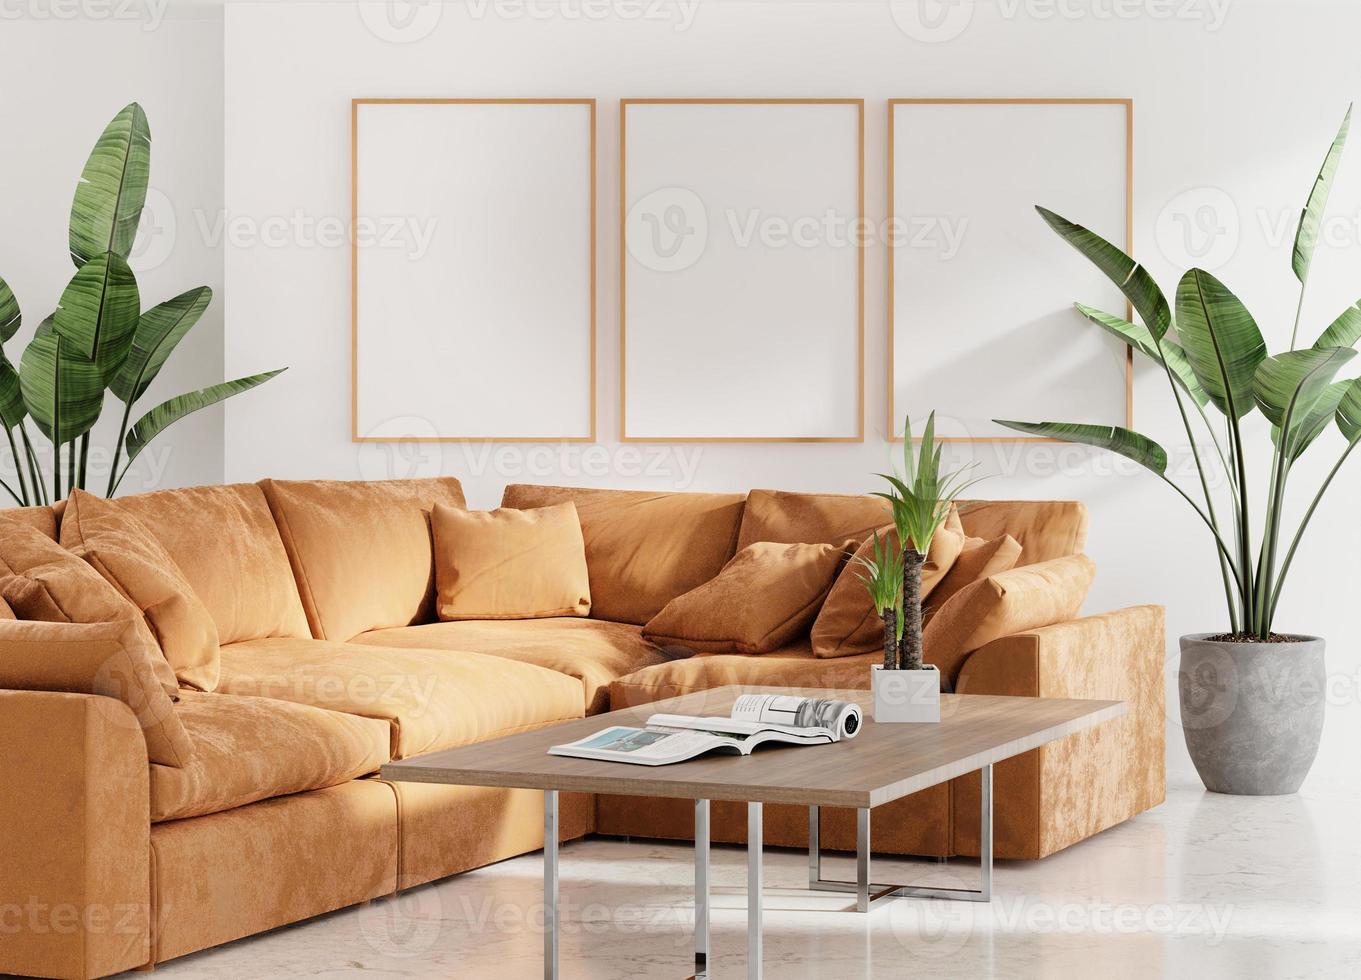 maquette de photo de cadre en toile dans une pièce minimaliste propre avec canapé marron et rendu 3d végétal